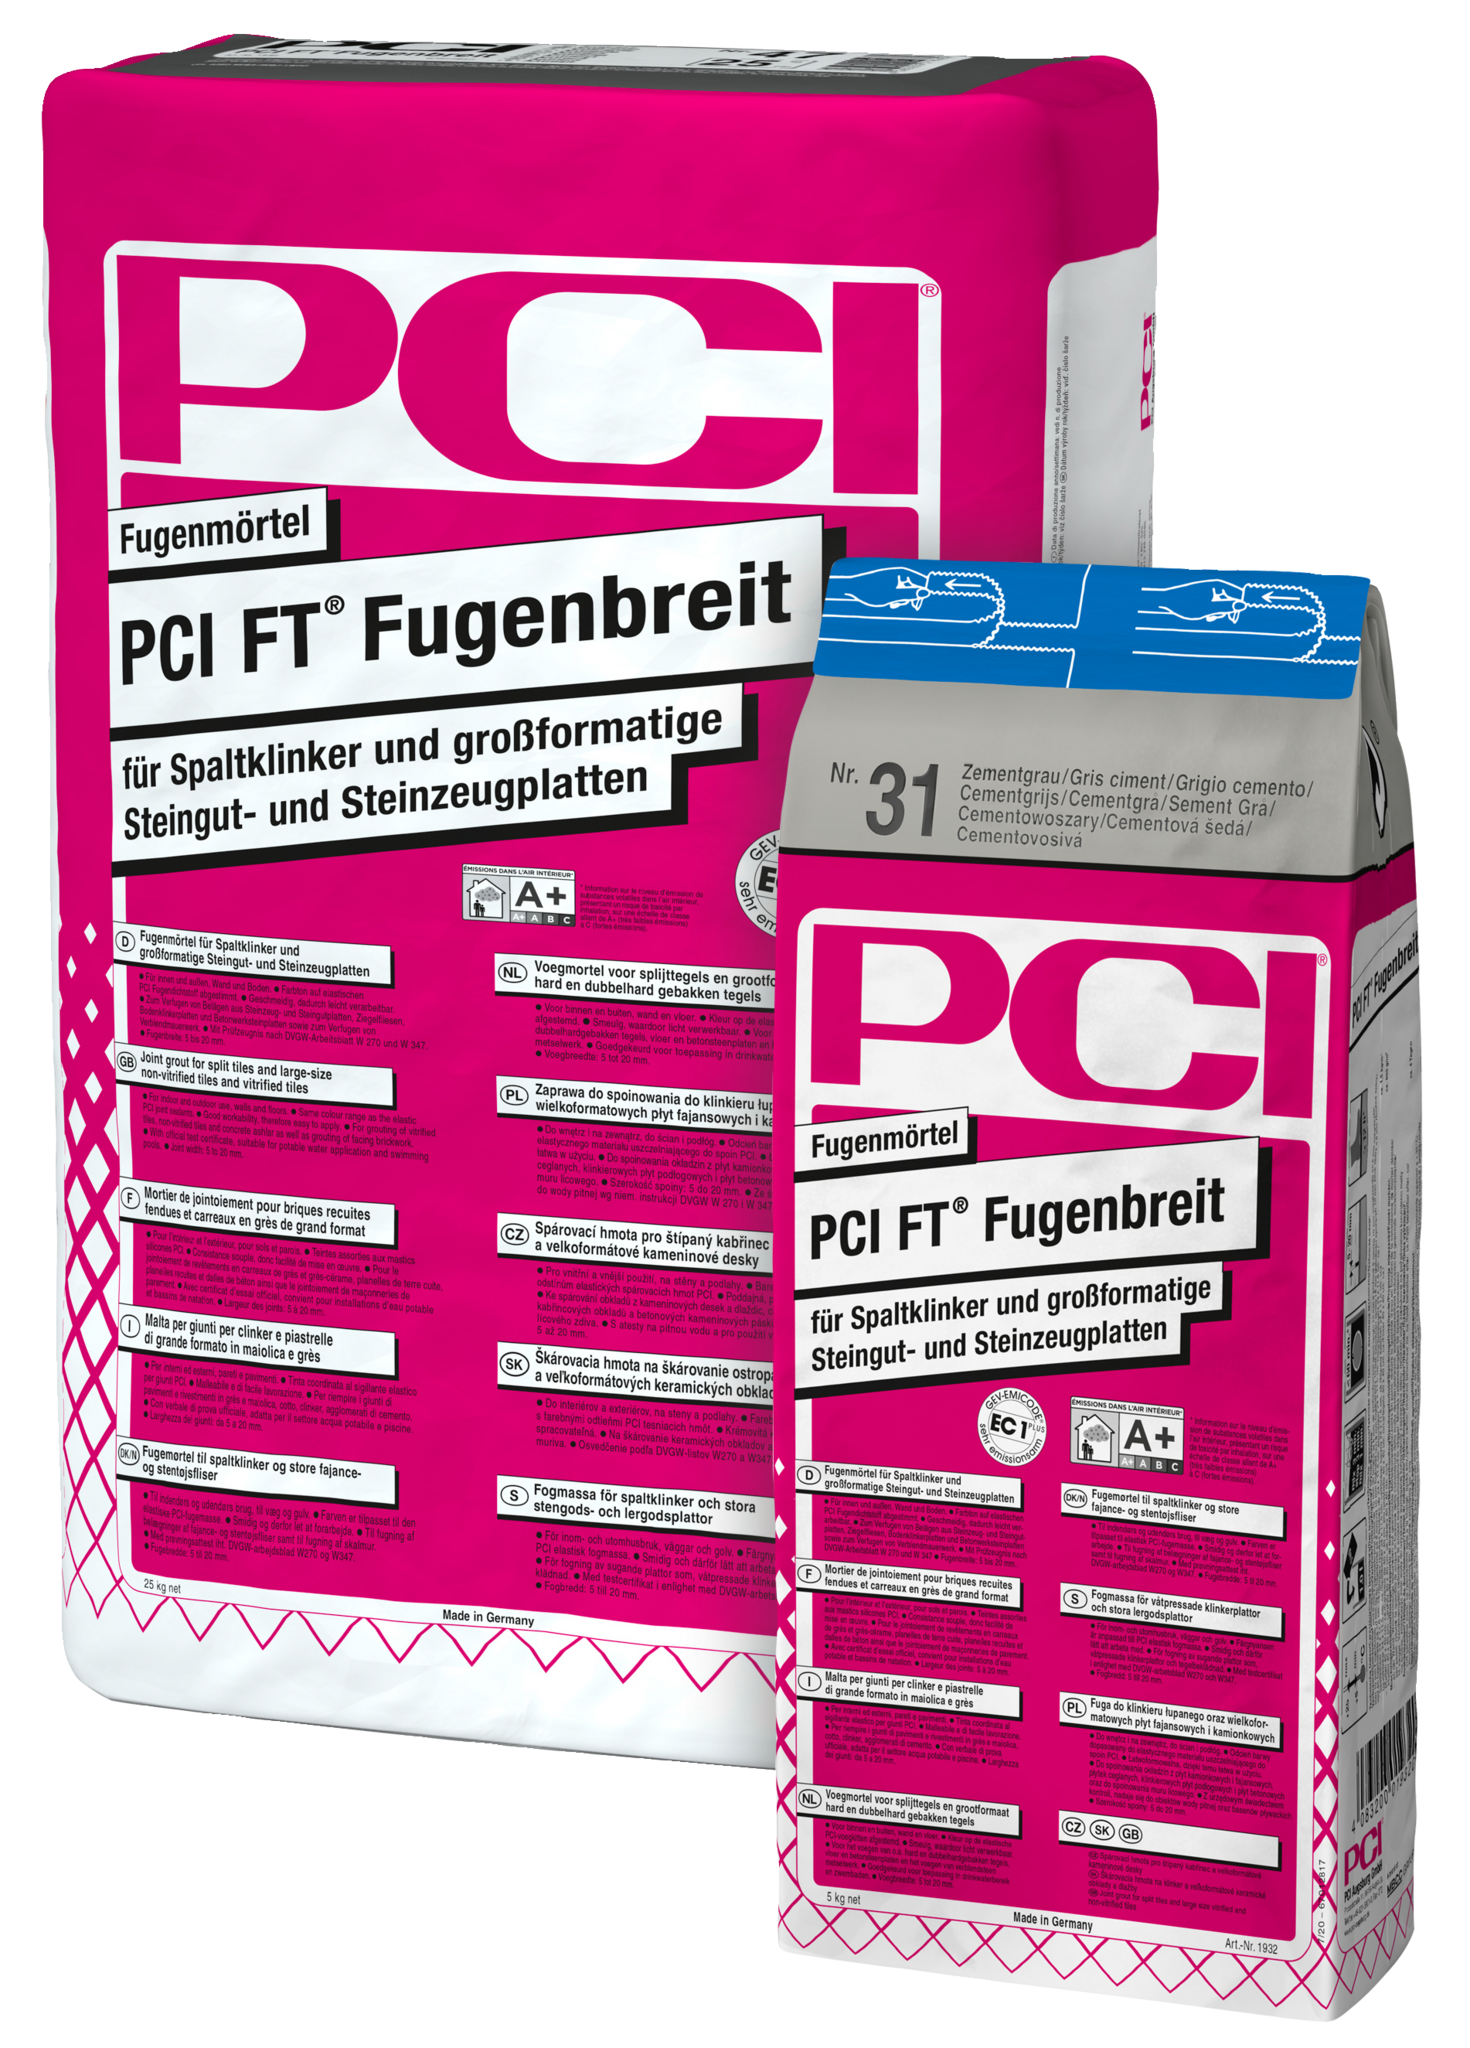 PCI FT® Fugenbreit